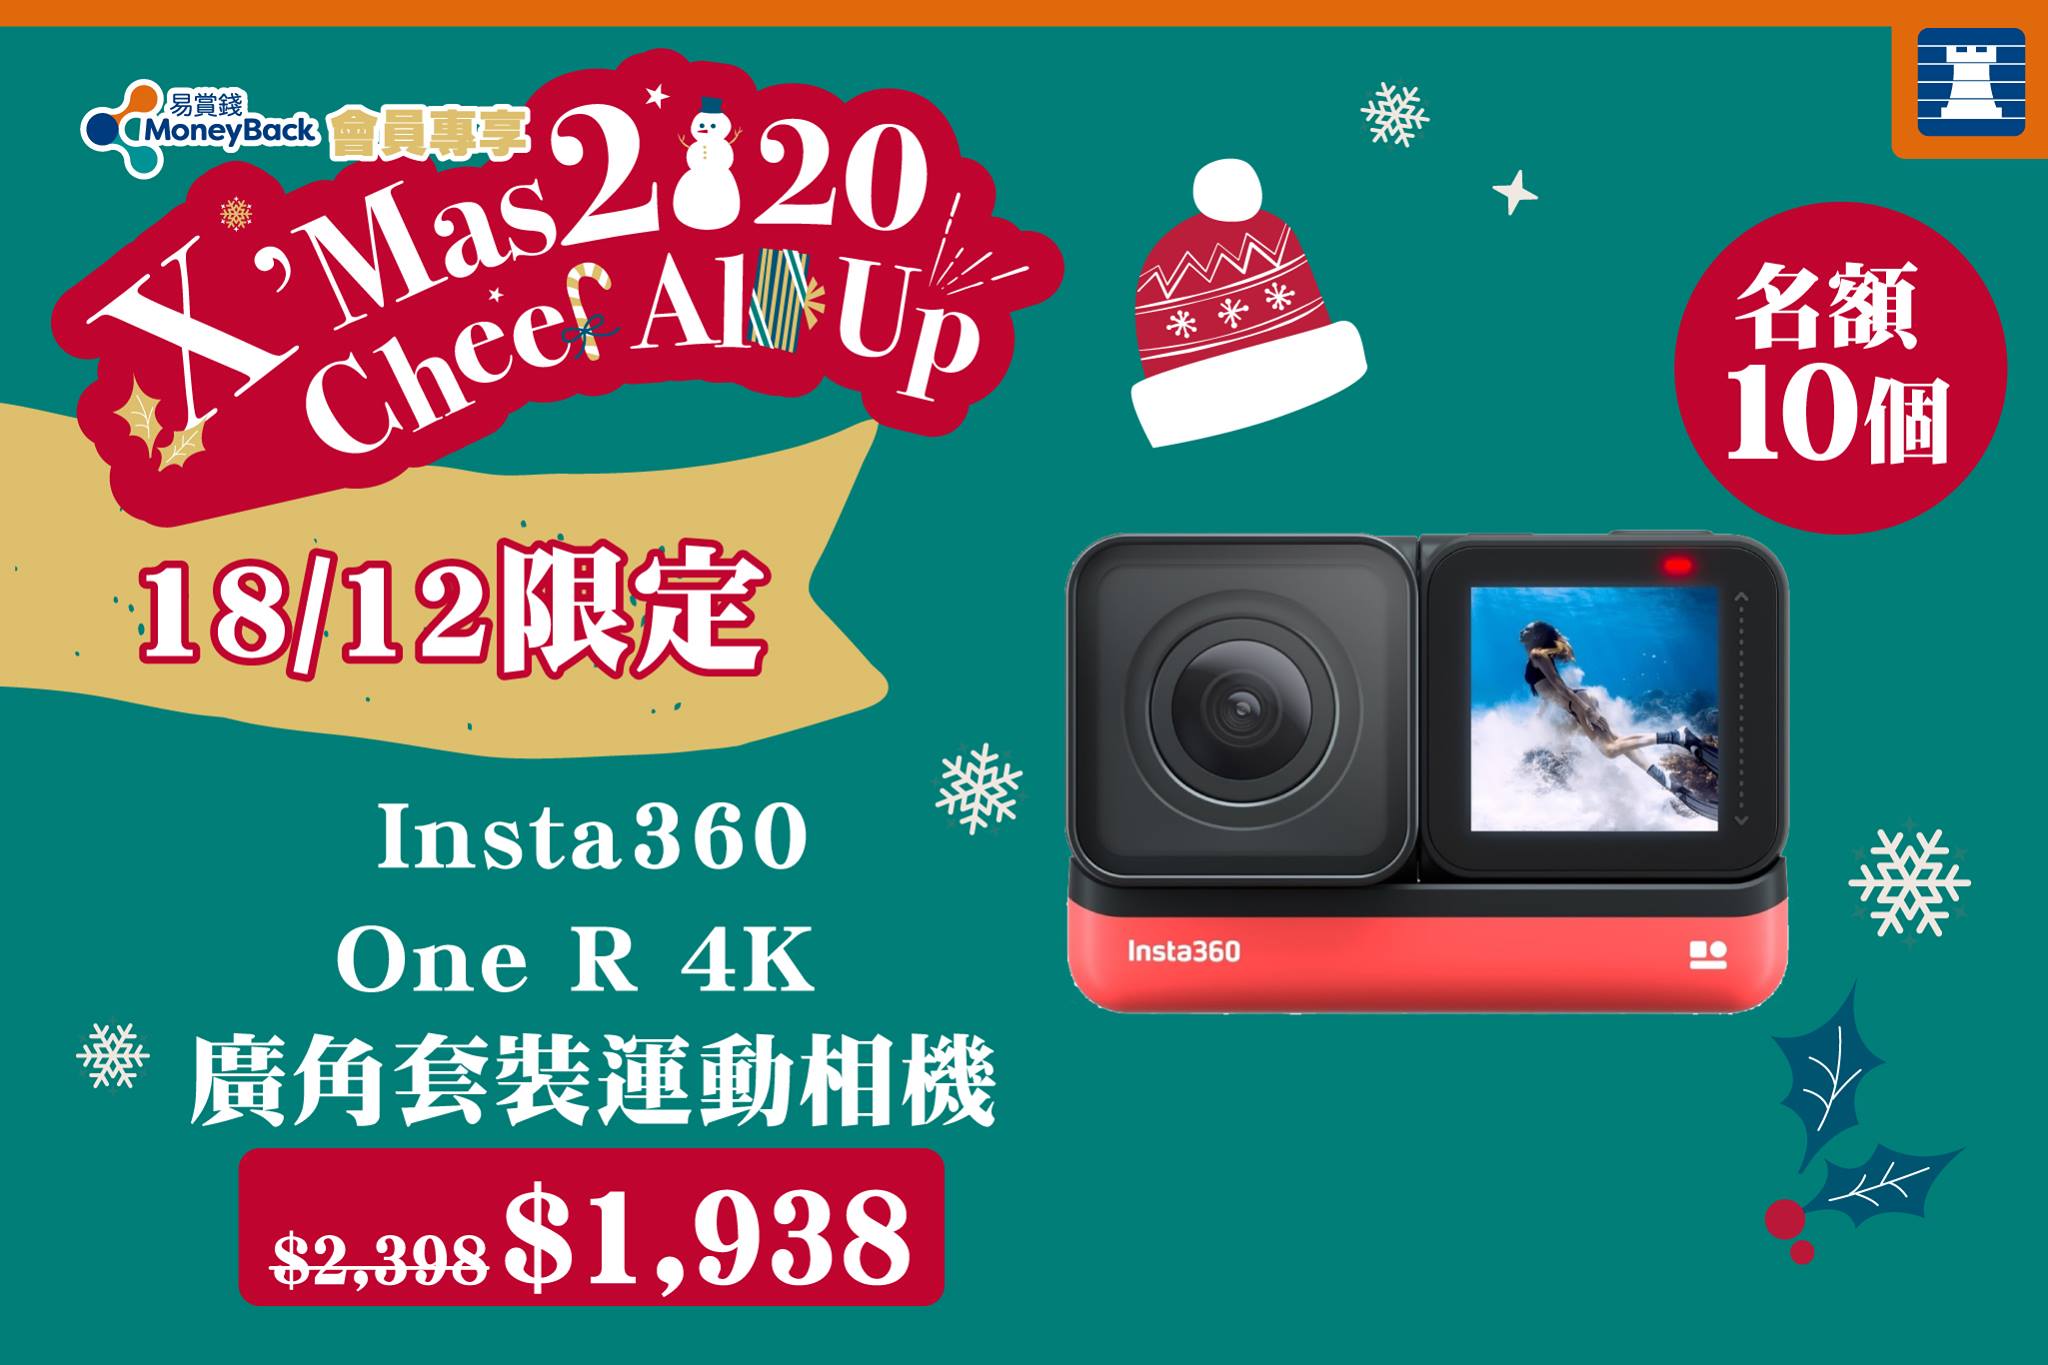 【18/12限定🎄Insta 360 One R 4K運動相機勁減至$1,938🤩】